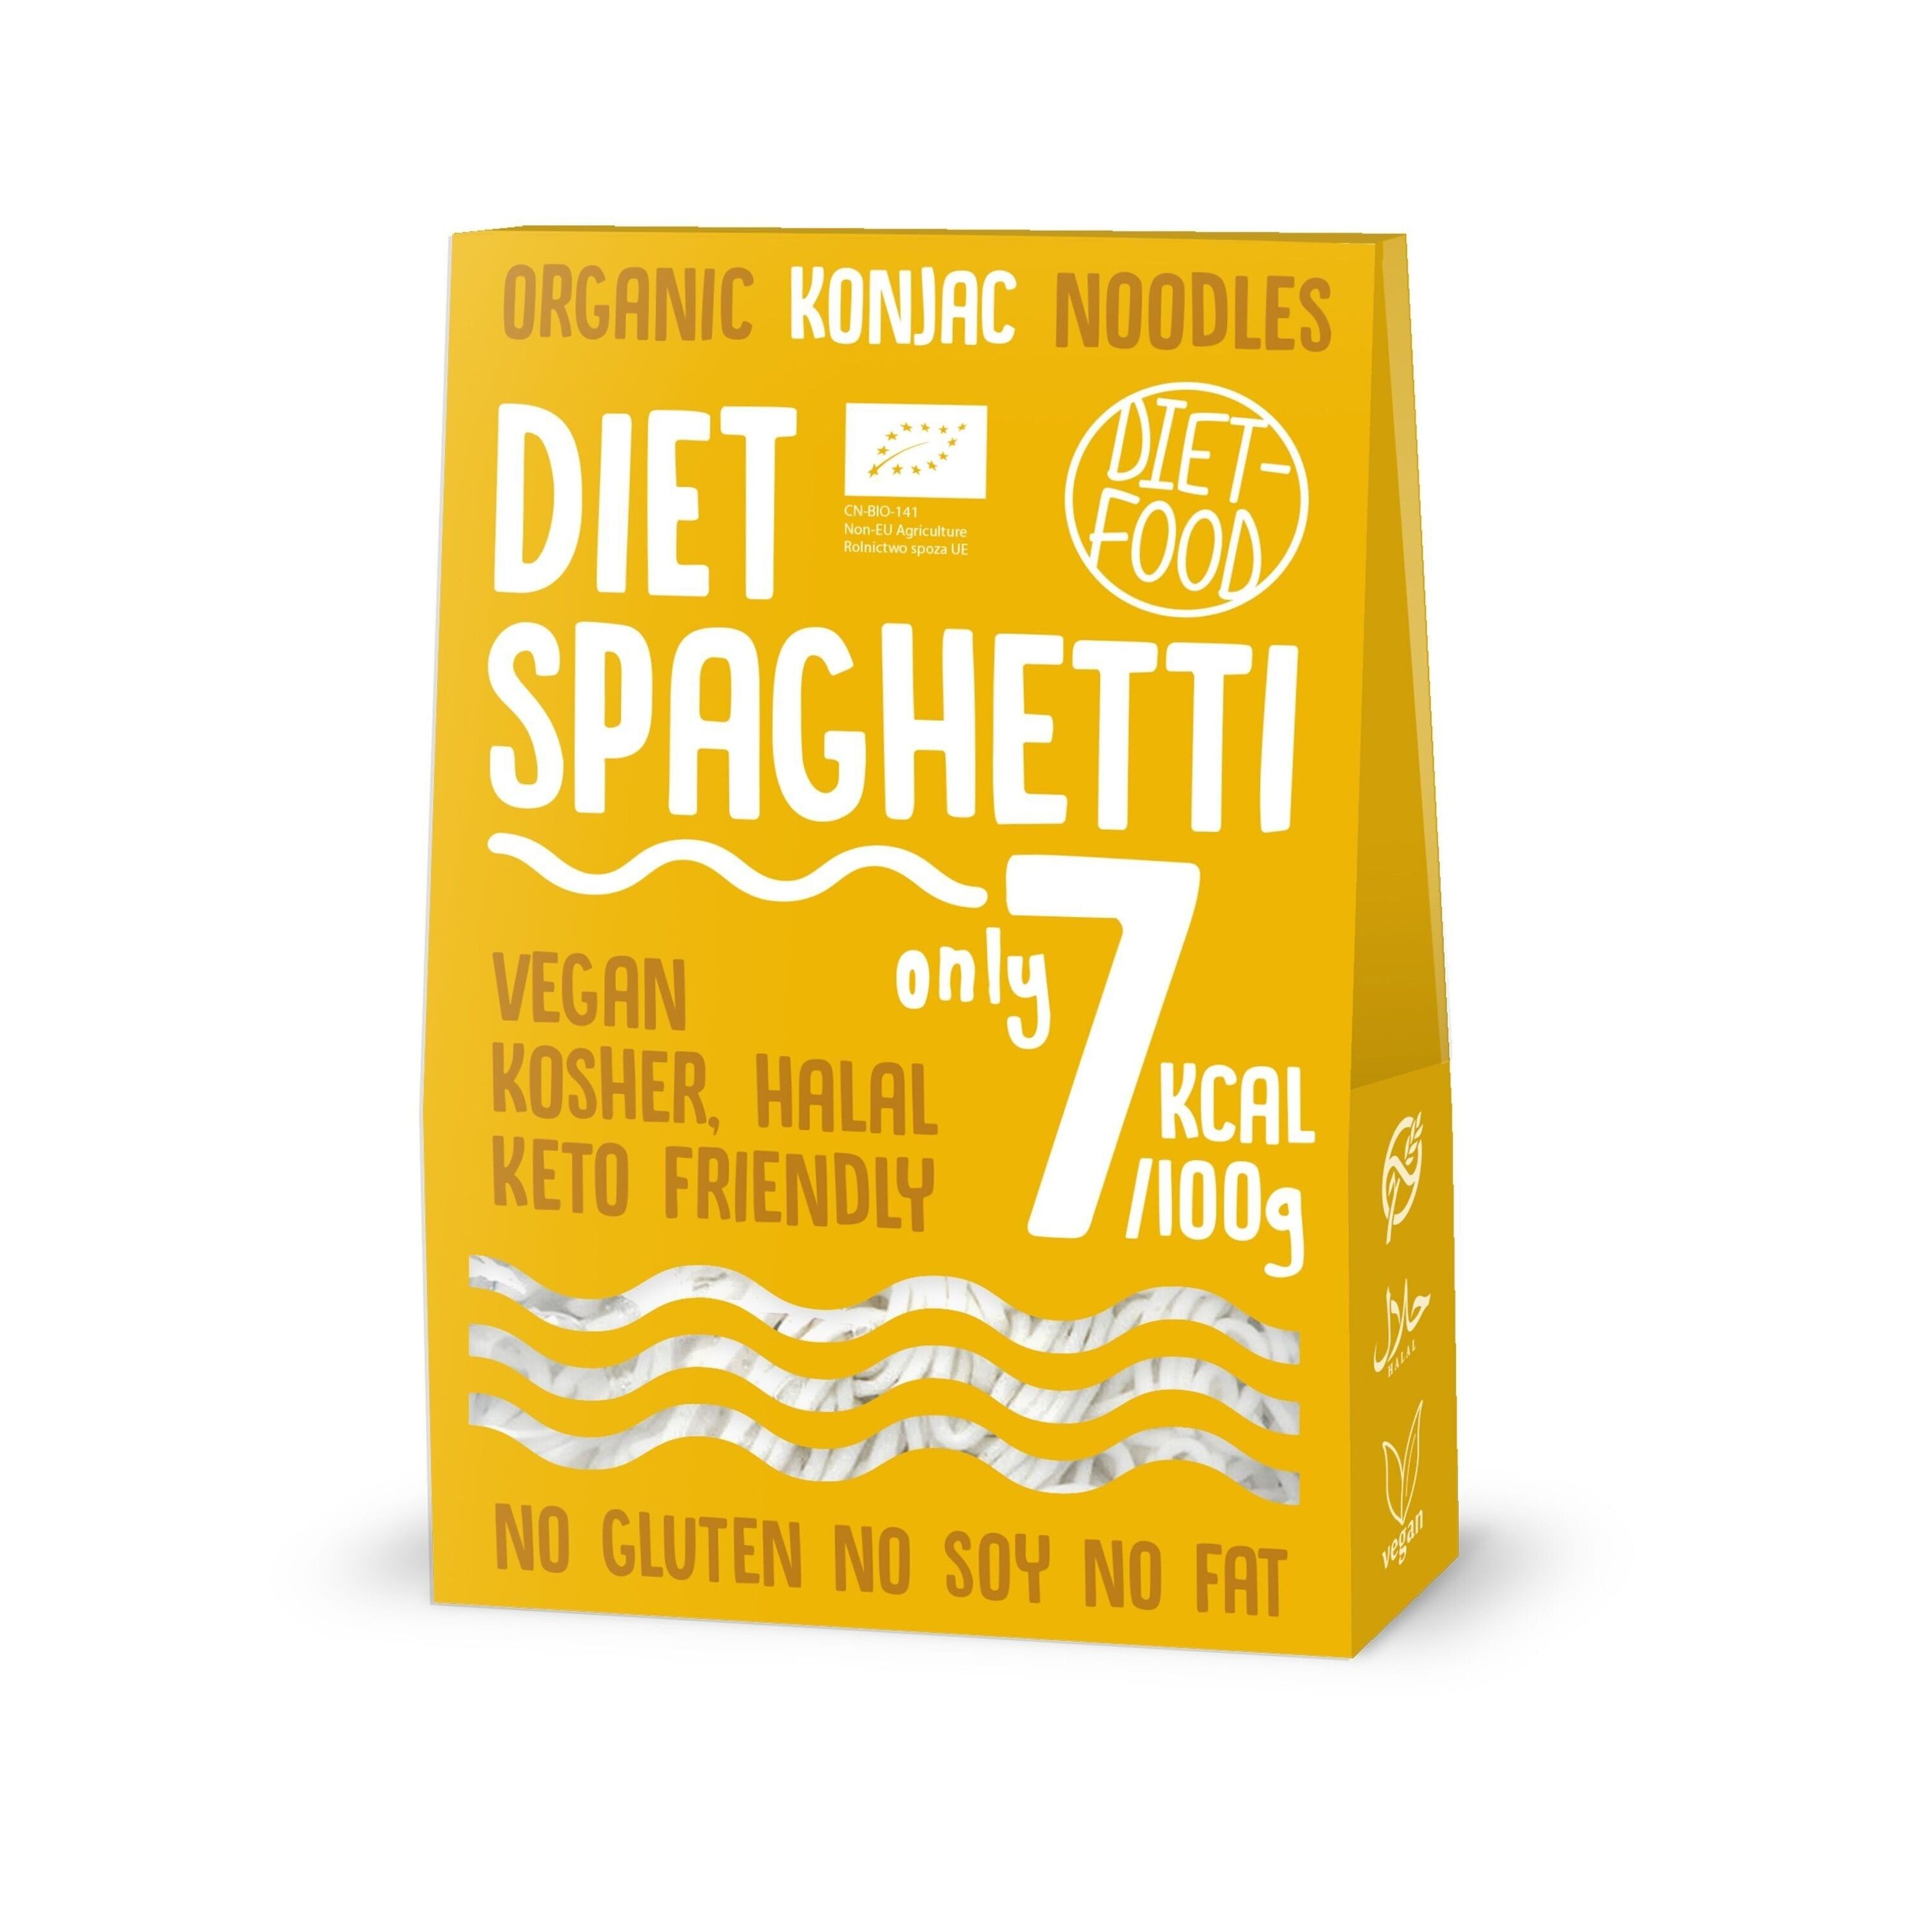 Spaghetti de konjac bio - Better Than Pasta - 385 g